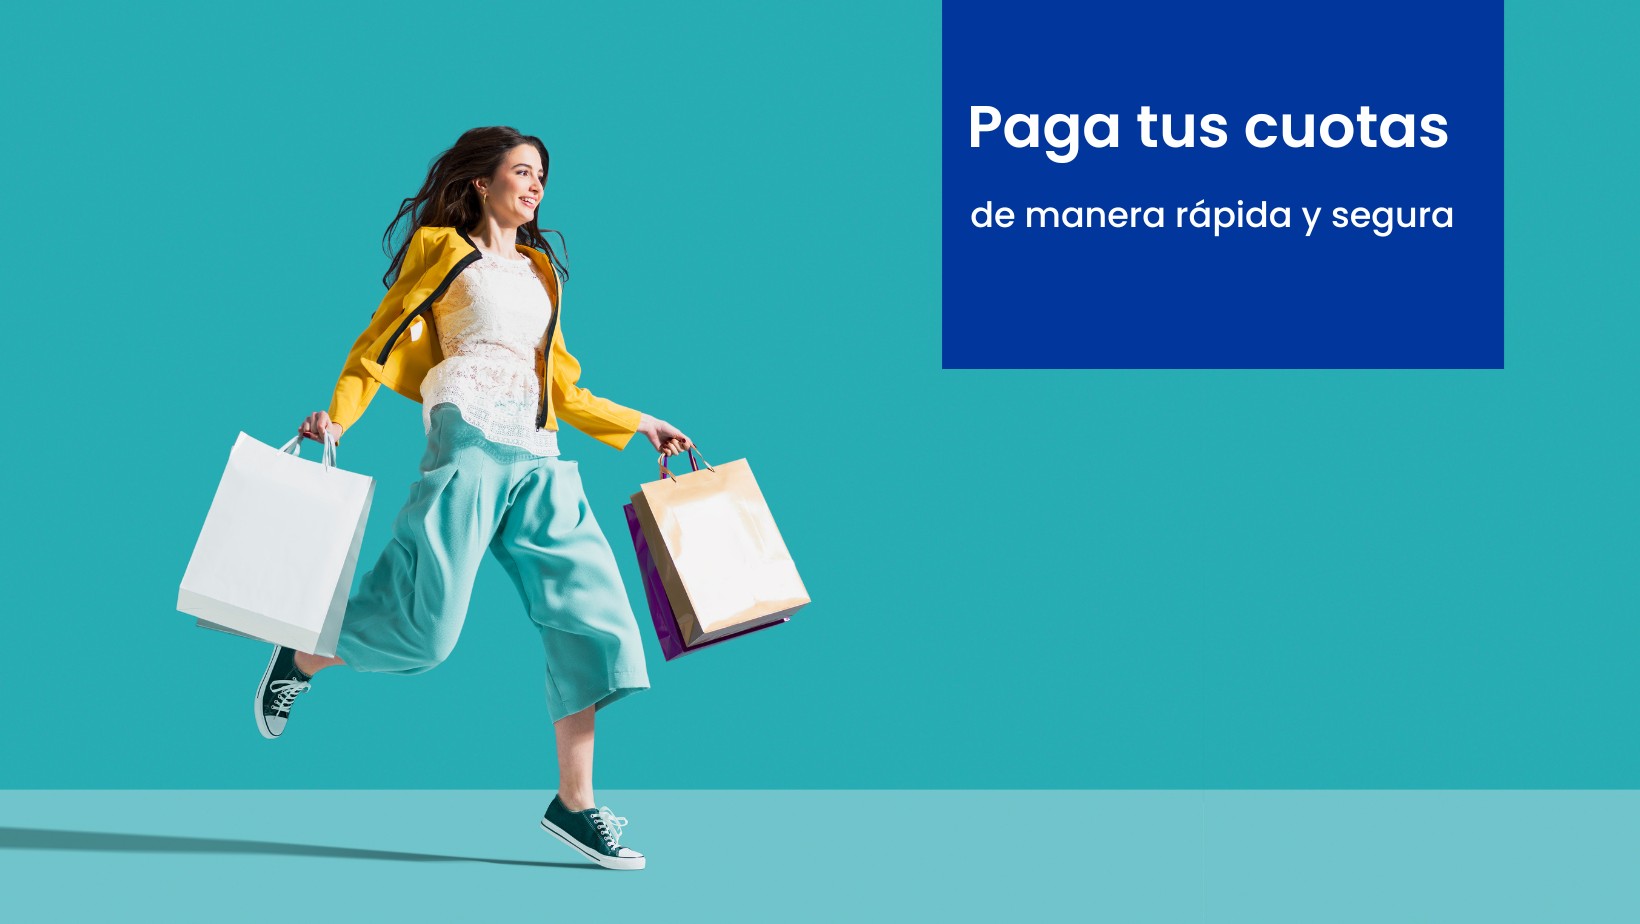 Muestra una mujer corriendo con cuatro bolsas de compras muy sonriente, y un letrero que dice: Paga tus cuotas de manera rápida y segura de Sistecrédito.